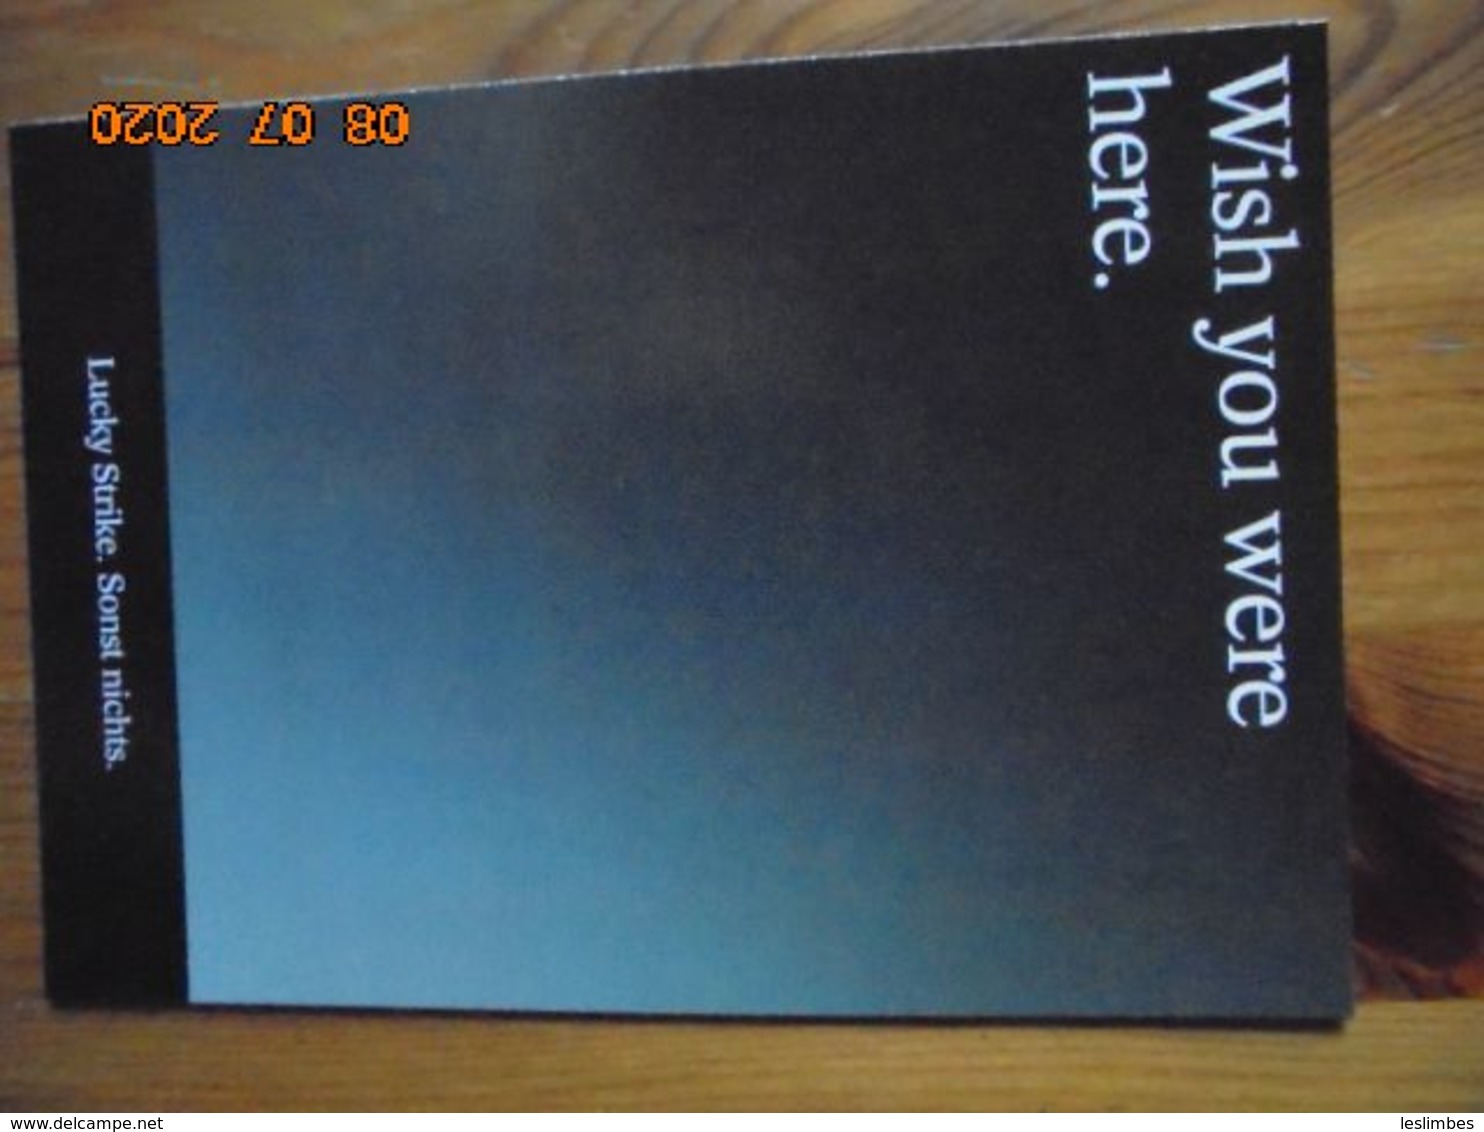 Carte Postale Publicitaire Allemand (Taschen 1996) 16,3 X 11,4 Cm. Lucky Strike. Sonst Nichts. "Wish You Were Here" 1994 - Werbeartikel